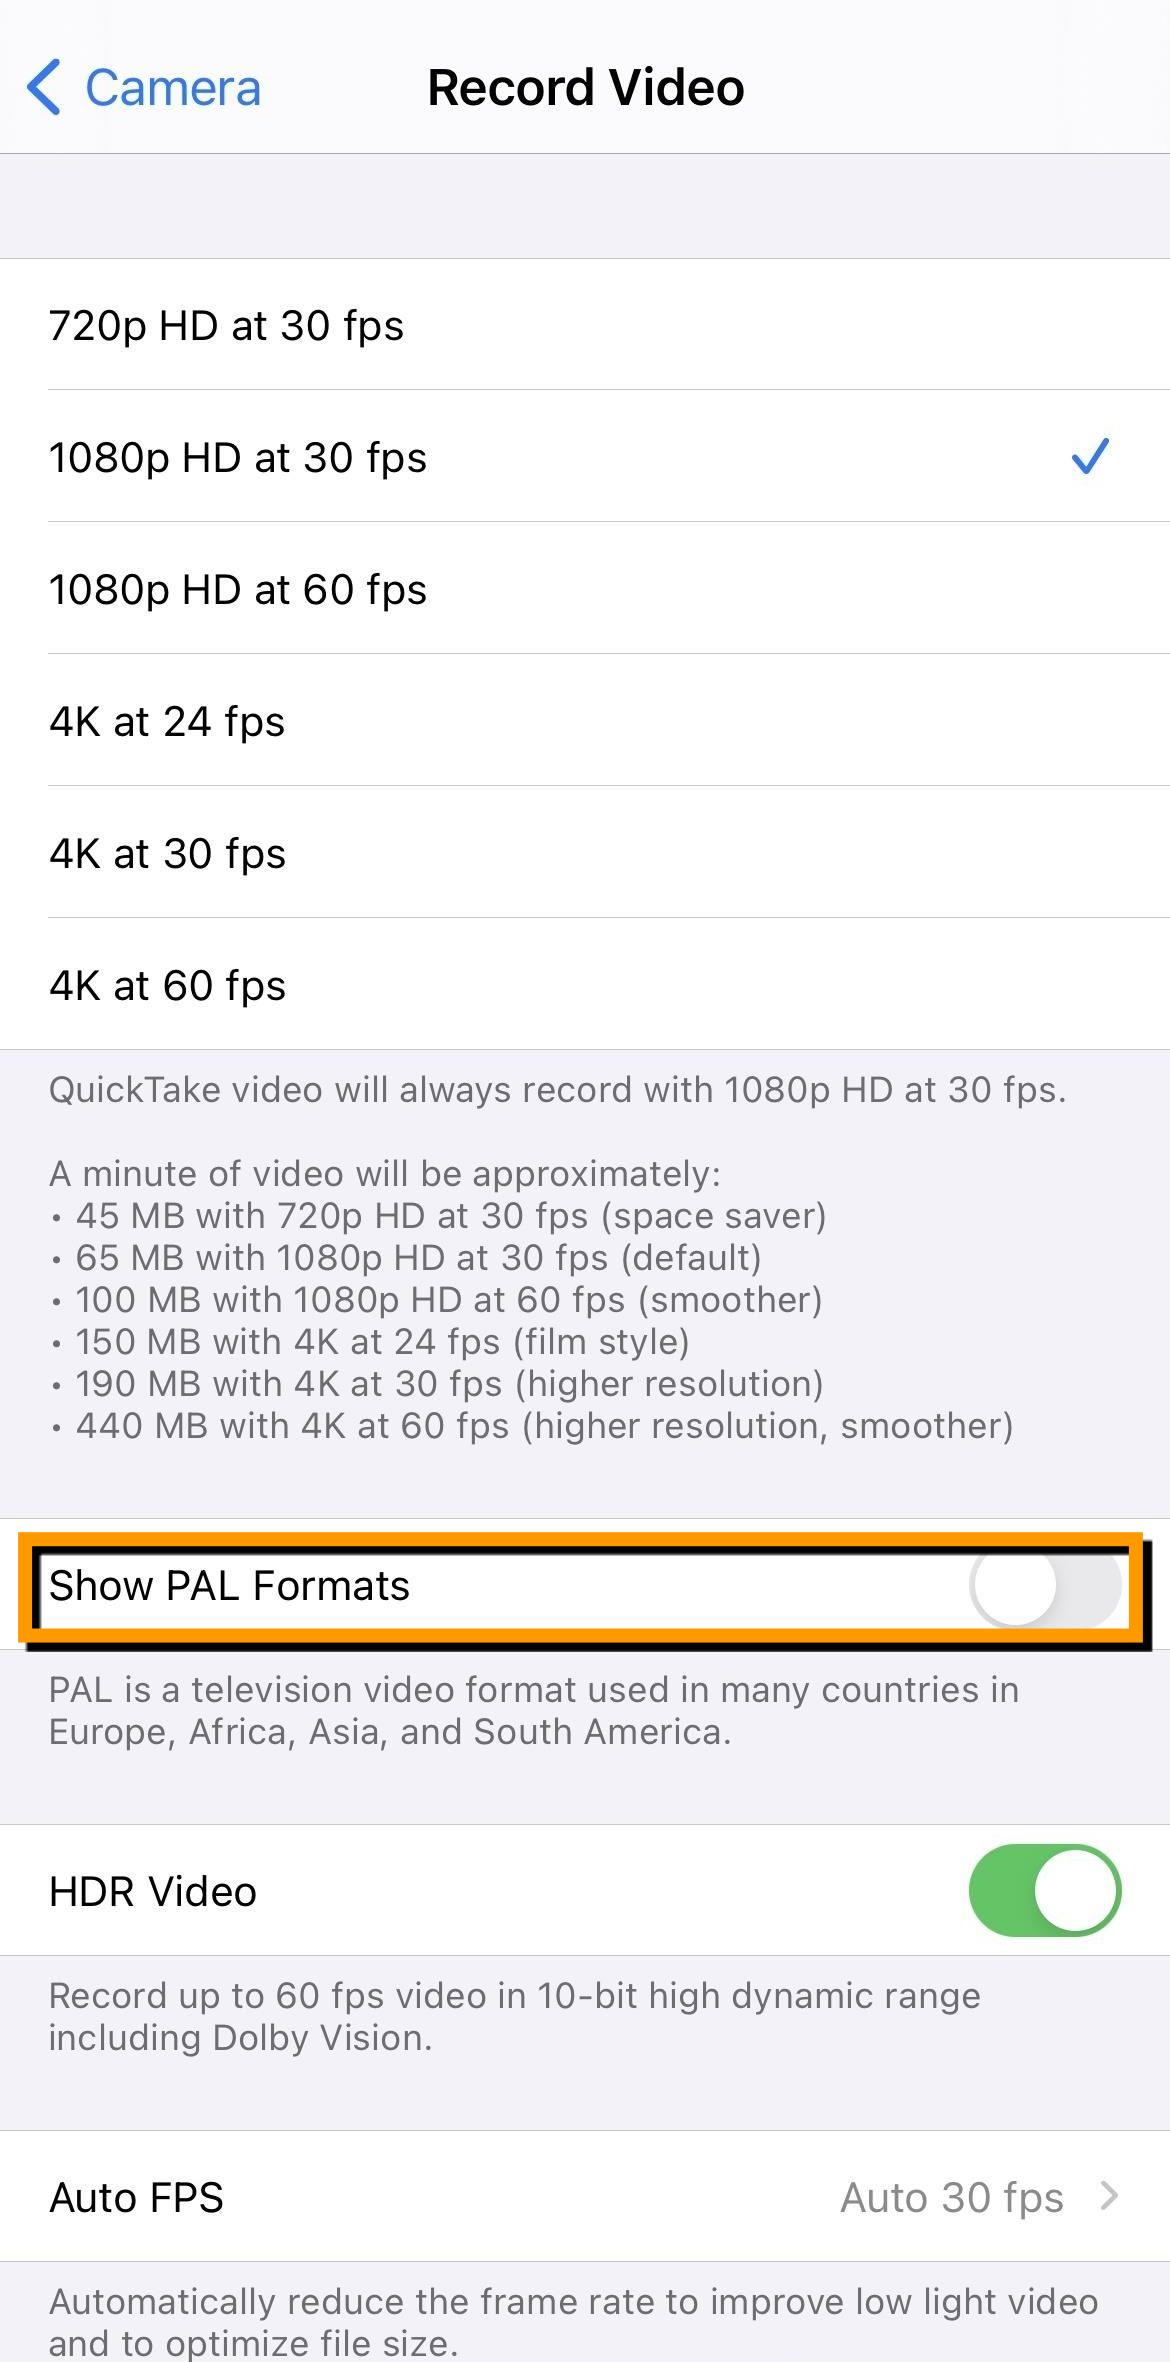 애플 아이폰 ios14.3 업데이트 내용 총정리 21가지